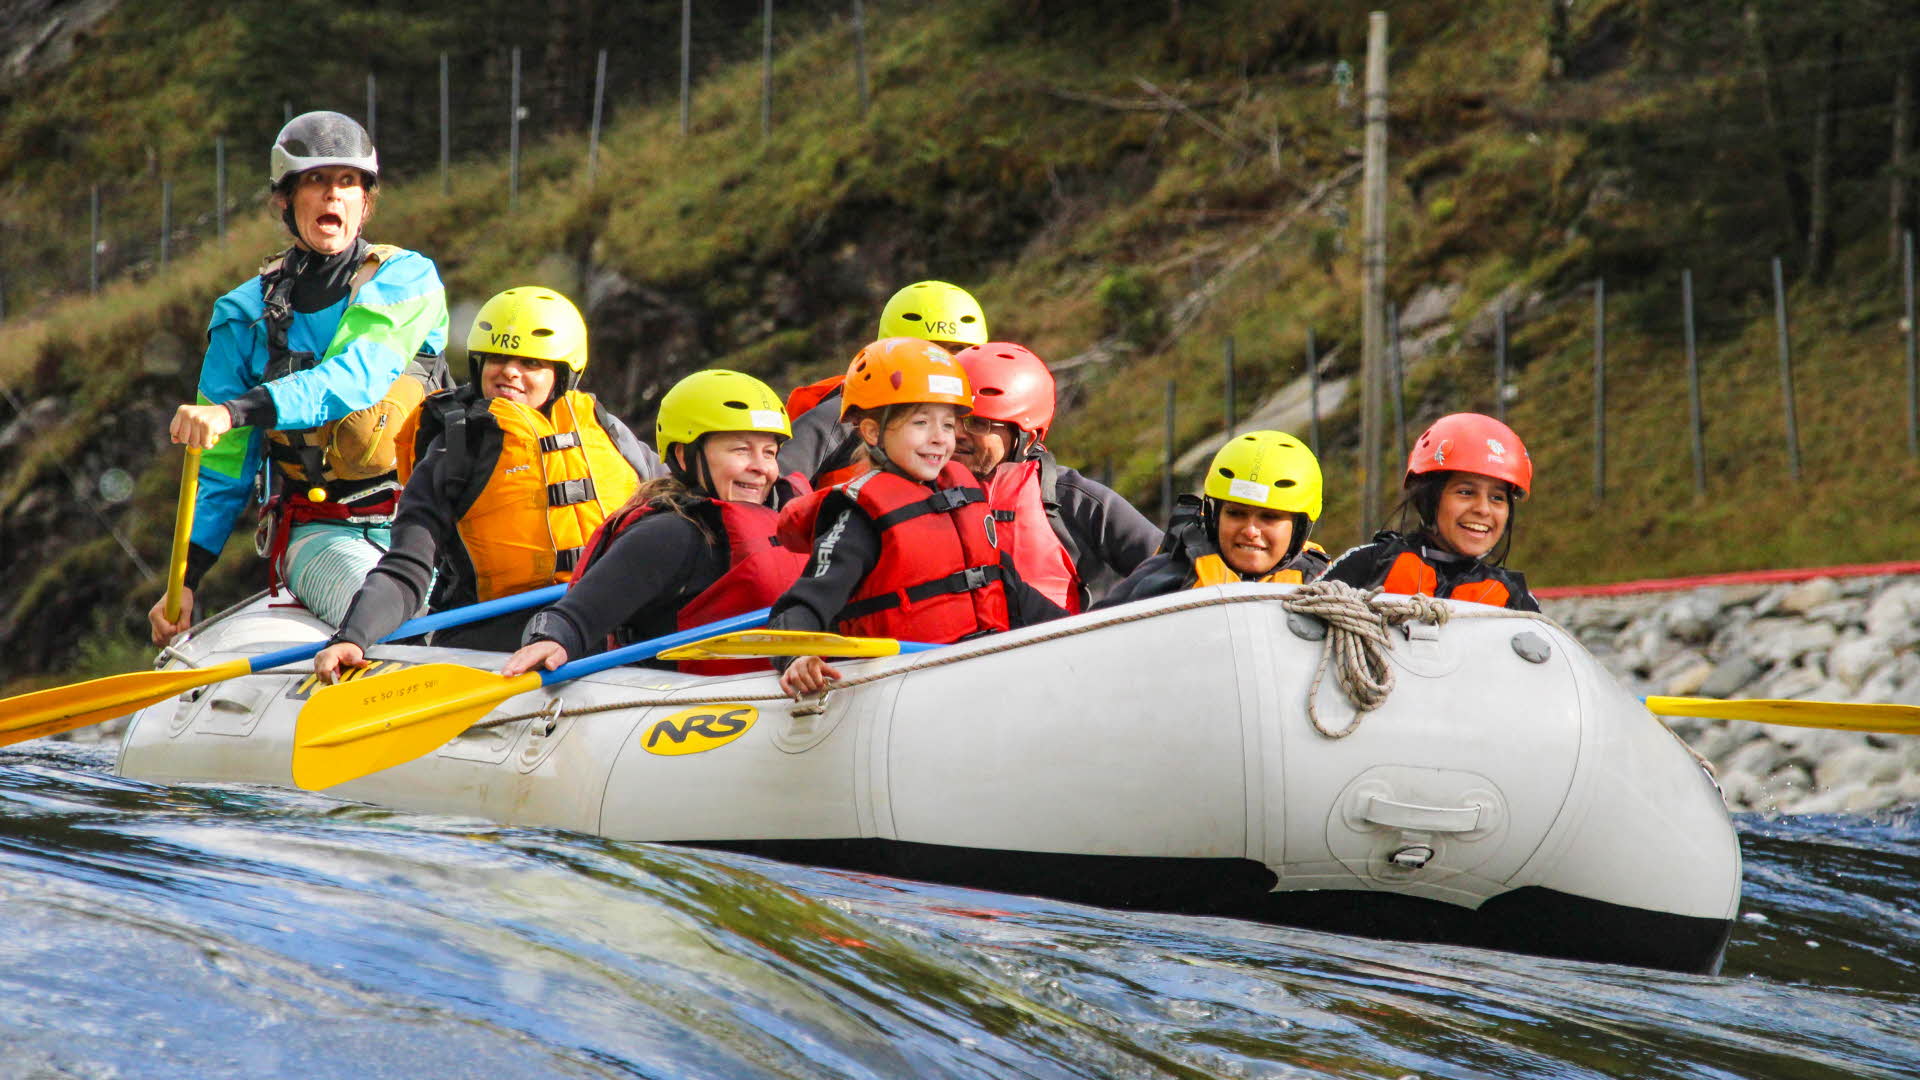 Niños con chalecos salvavidas y cascos sentados en una balsa sonriendo mientras, detrás, el guía grita instrucciones.